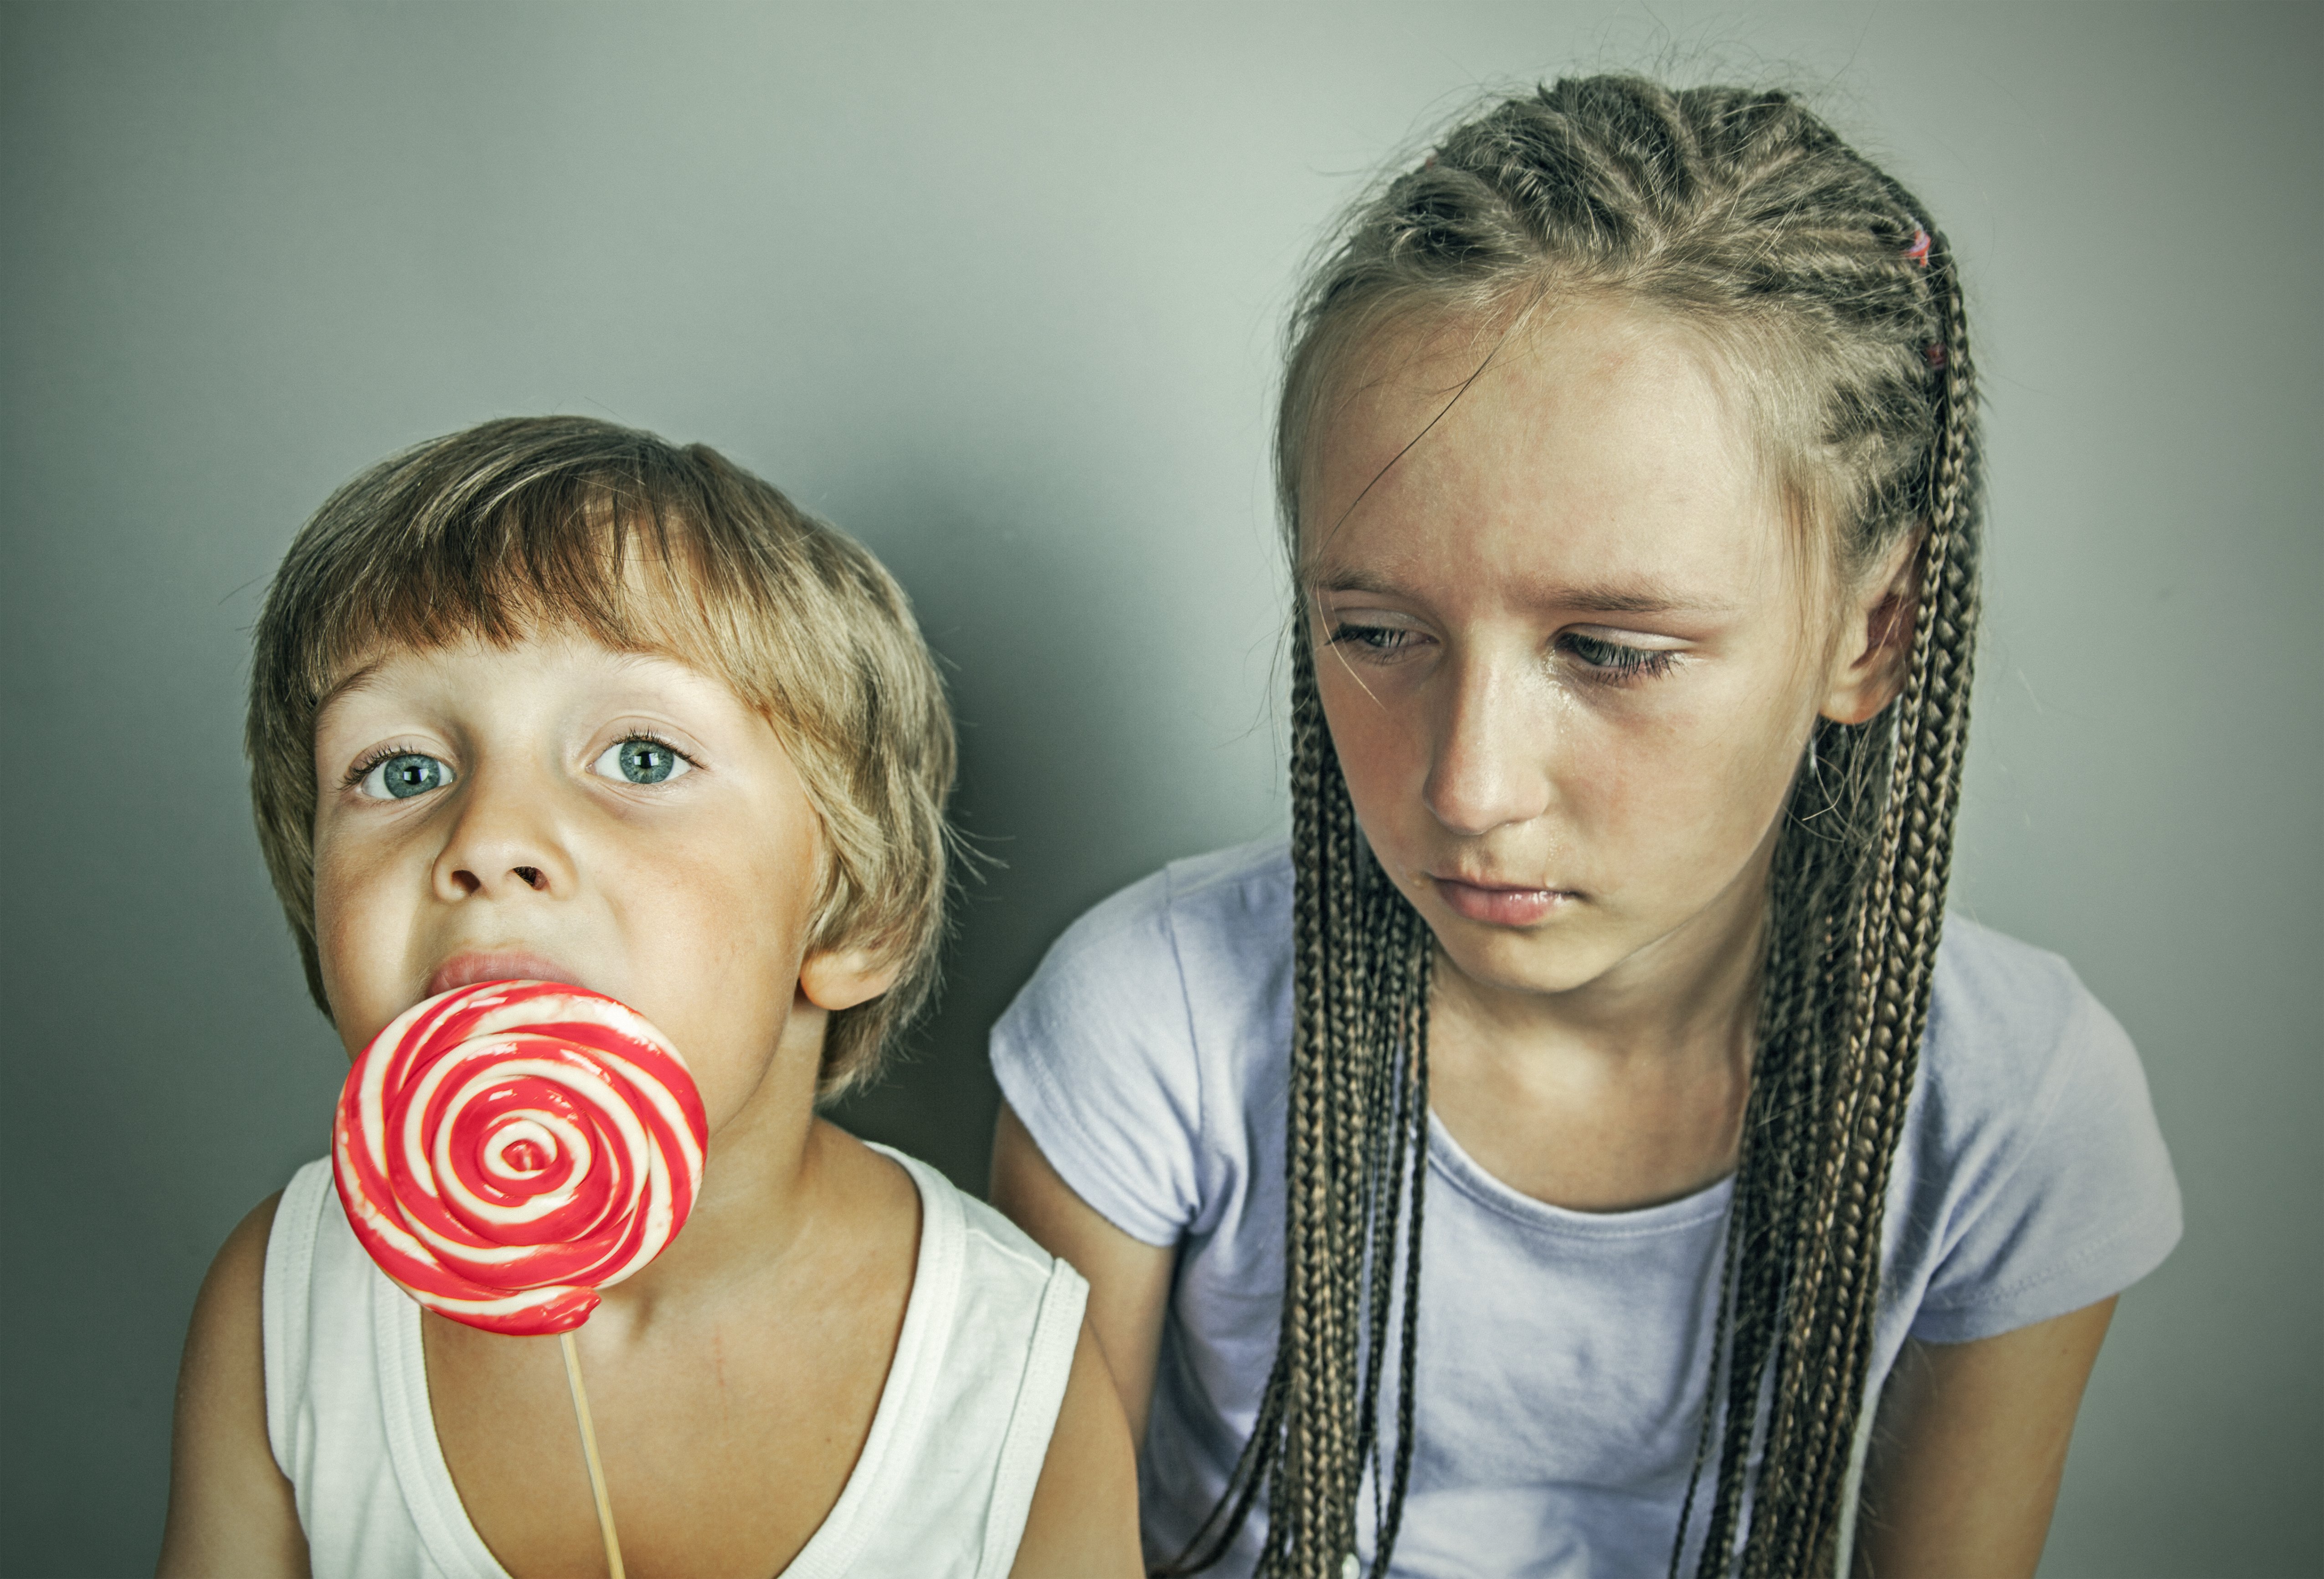 Nila mira celosa a su hermanito comer dulces. | Foto: Shutterstock